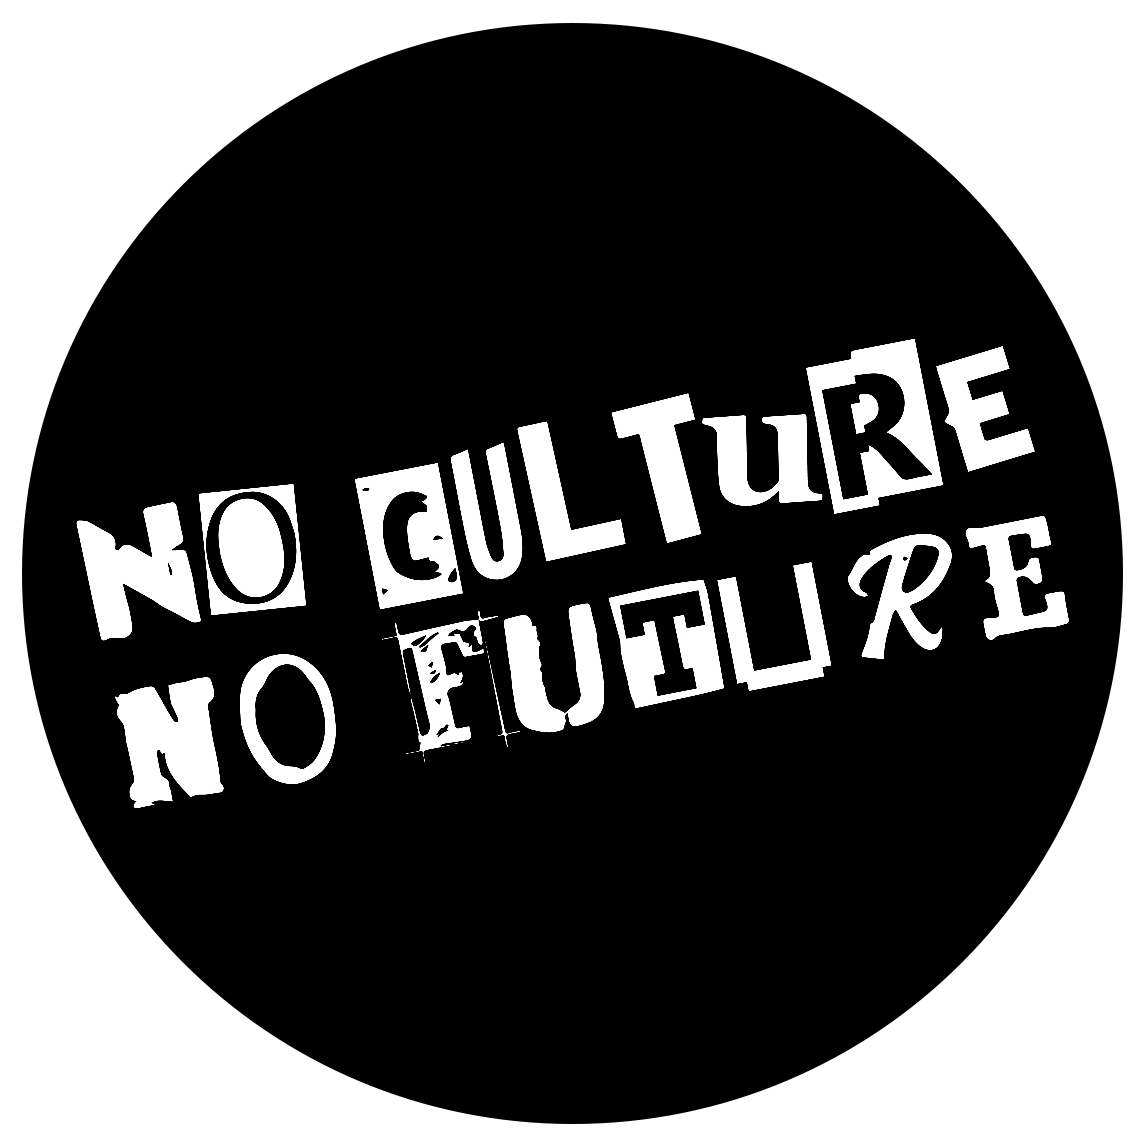 No Culture No Future